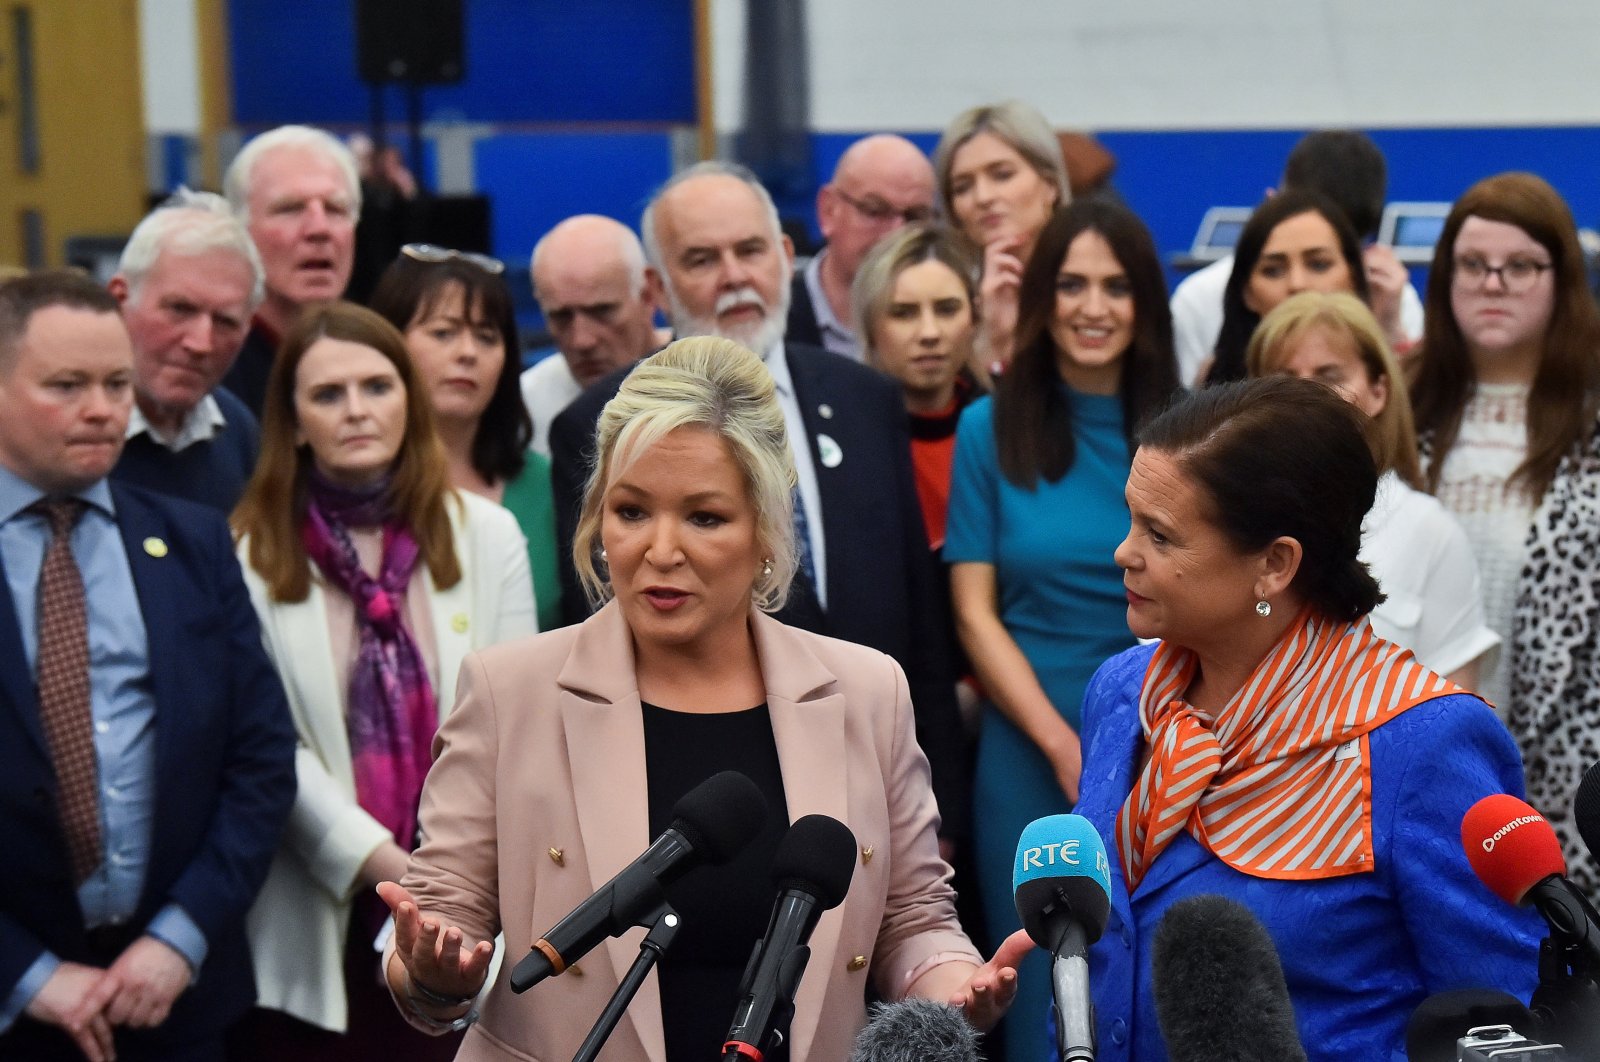 Kemenangan pemilu mengantar era baru bagi Irlandia Utara: Sinn Fein